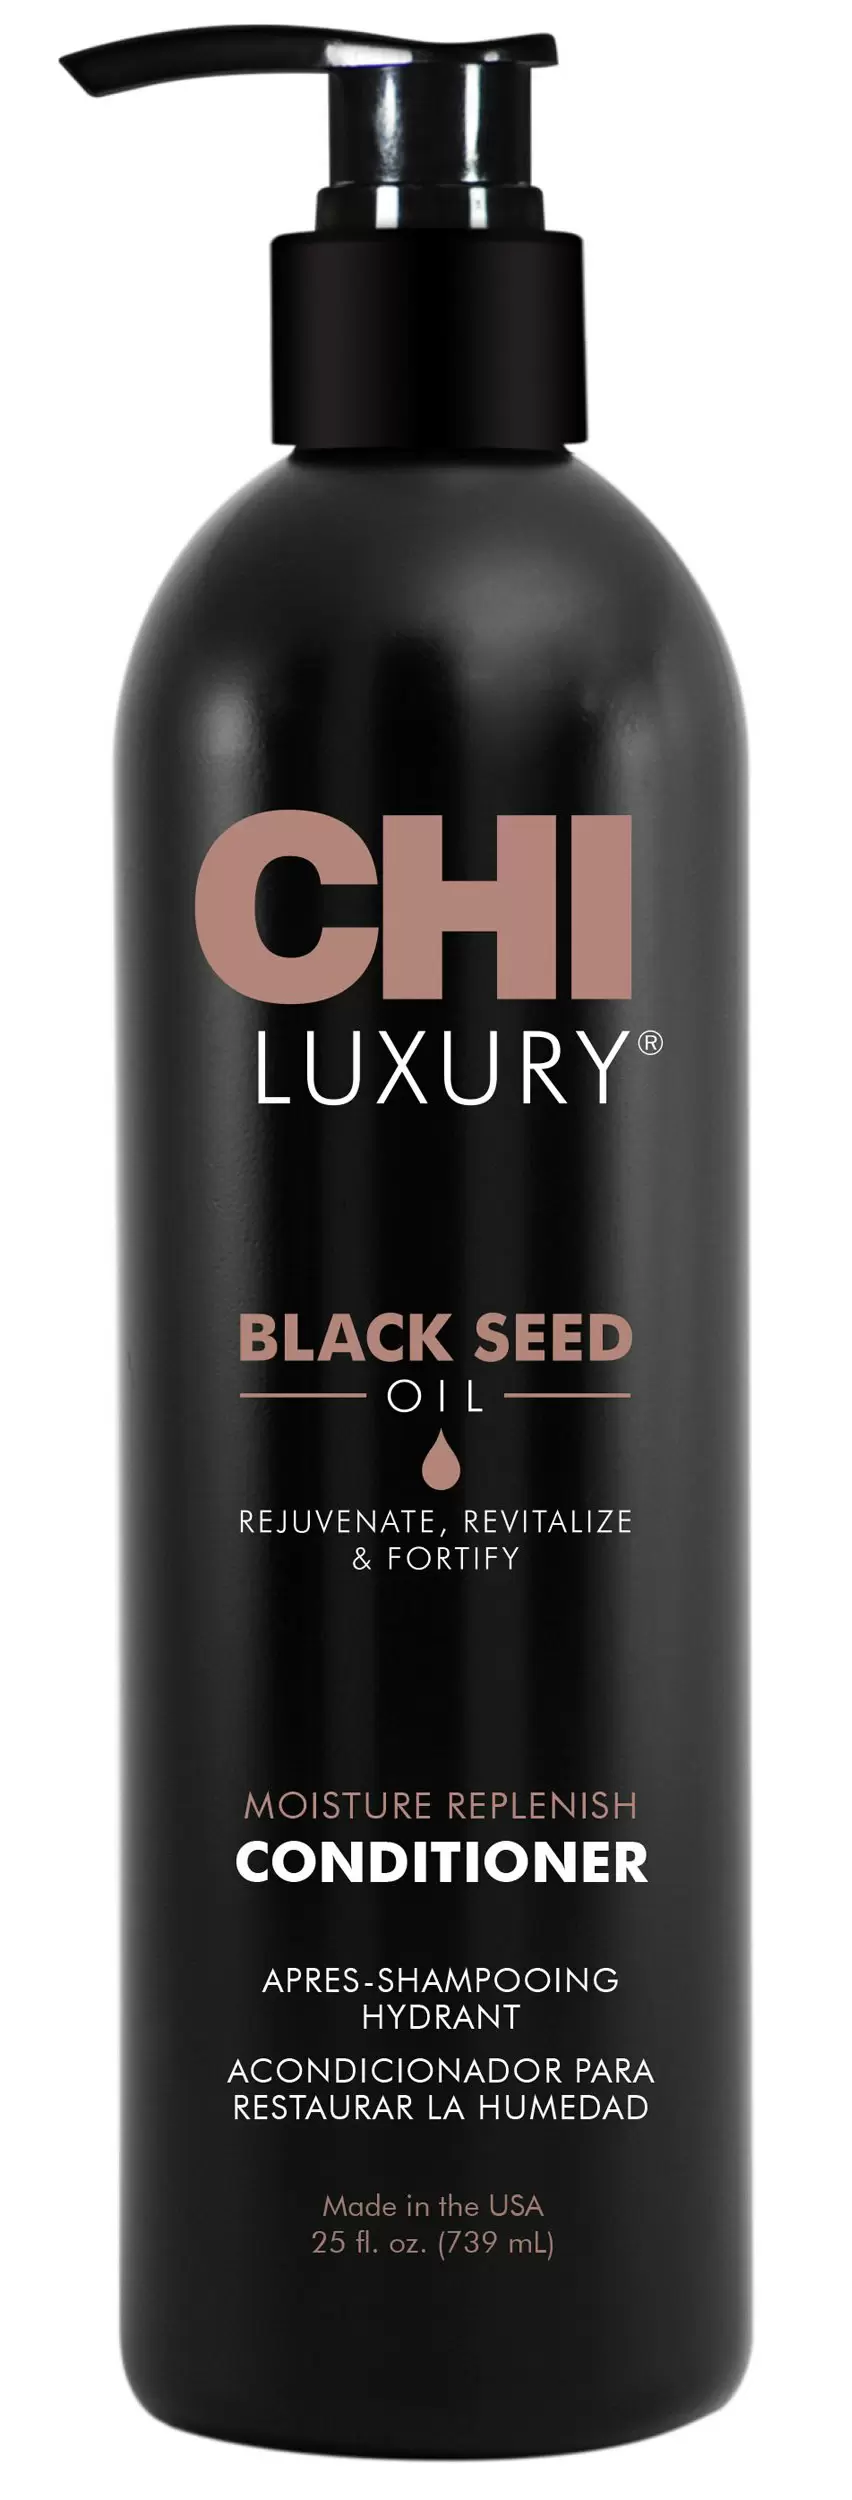 Кондиционер luxury. Chi Luxury Black Seed Oil 50 мл. Chi кондиционер с маслом черного тмина. Chi шампунь для волос. Шампунь для черных волос.